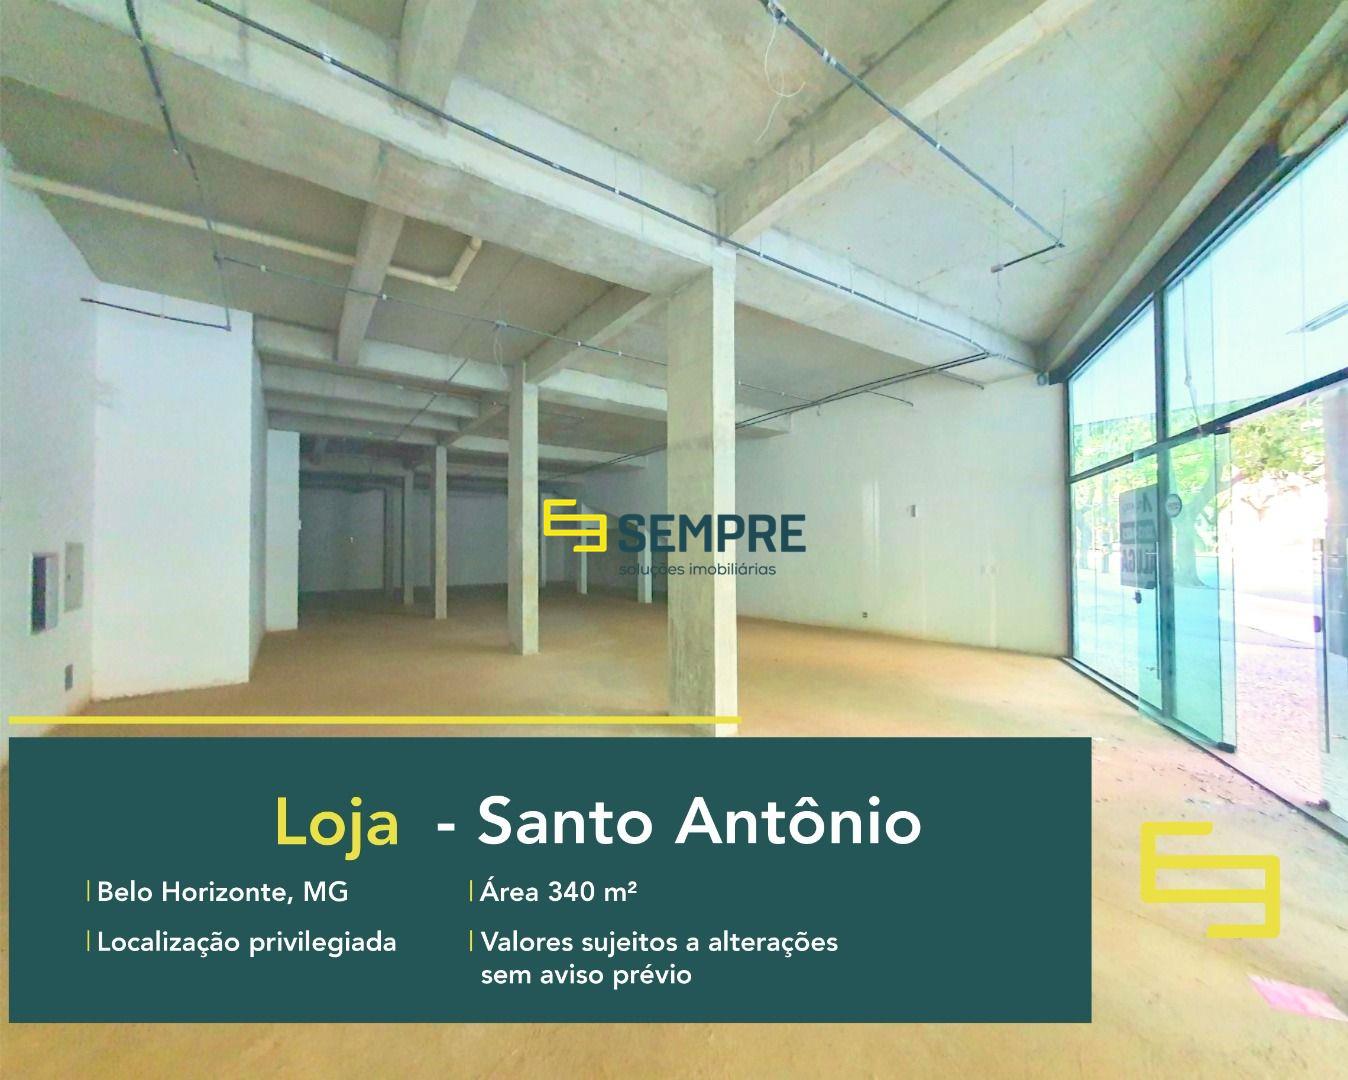 Loja para alugar no Santo Antônio em BH, excelente localização. O Estabelecimento comercial para alugar, conta sobretudo, com área de 340 m².